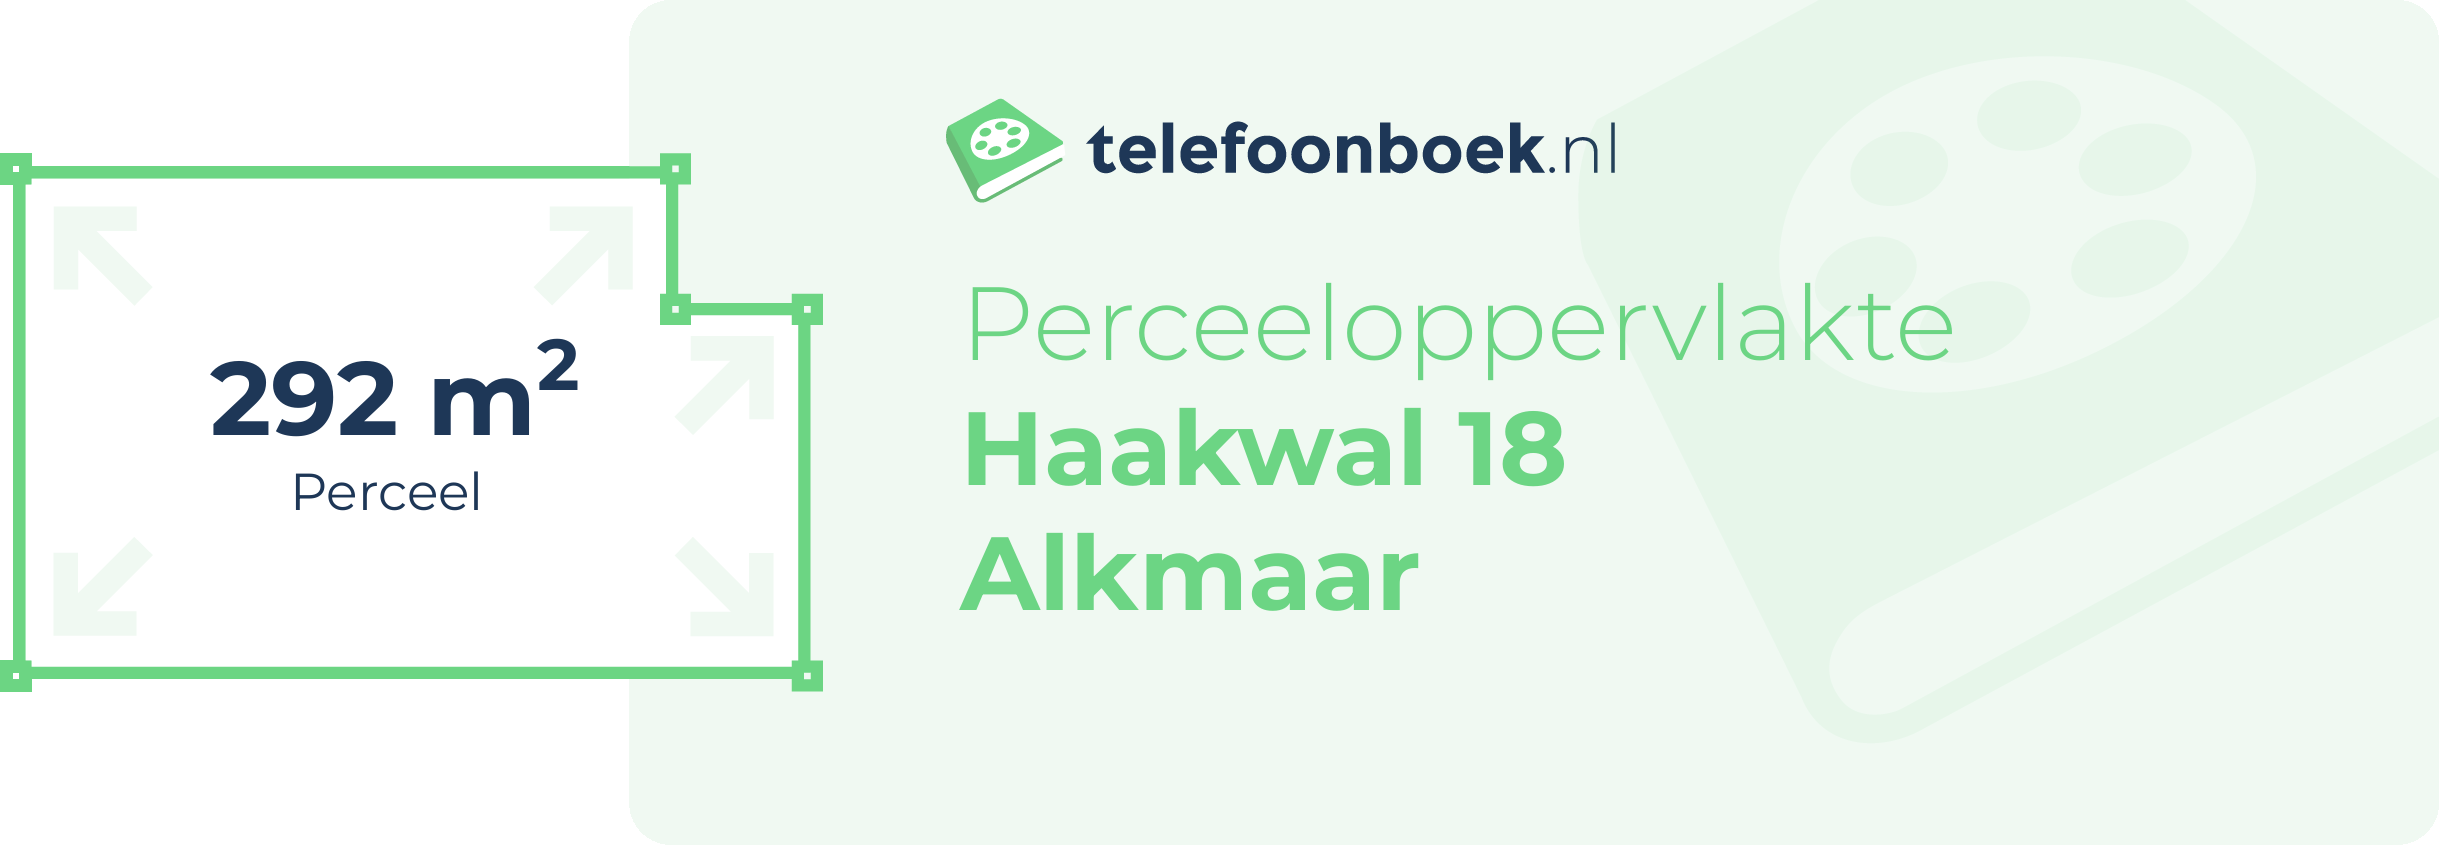 Perceeloppervlakte Haakwal 18 Alkmaar